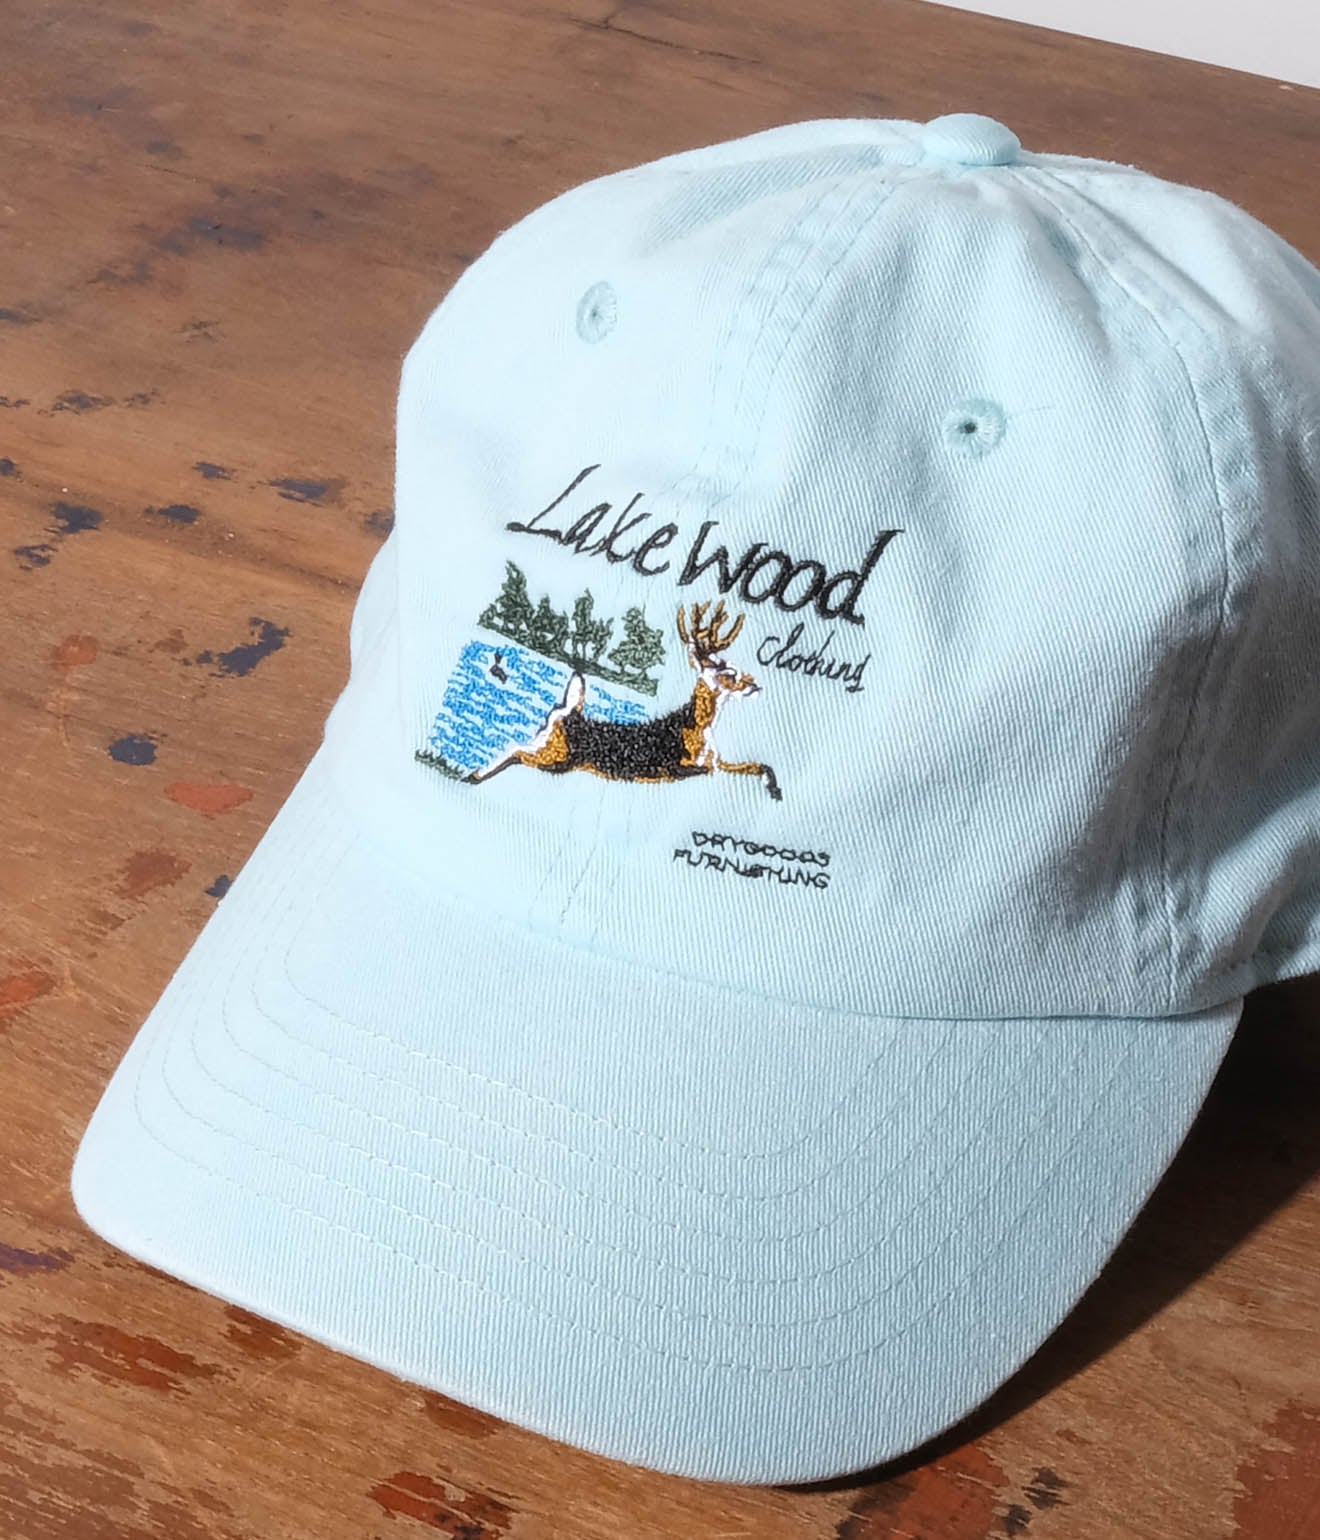 Souvenir Goods "Lakewood Clothing Souvenir Cap" (Aqua)